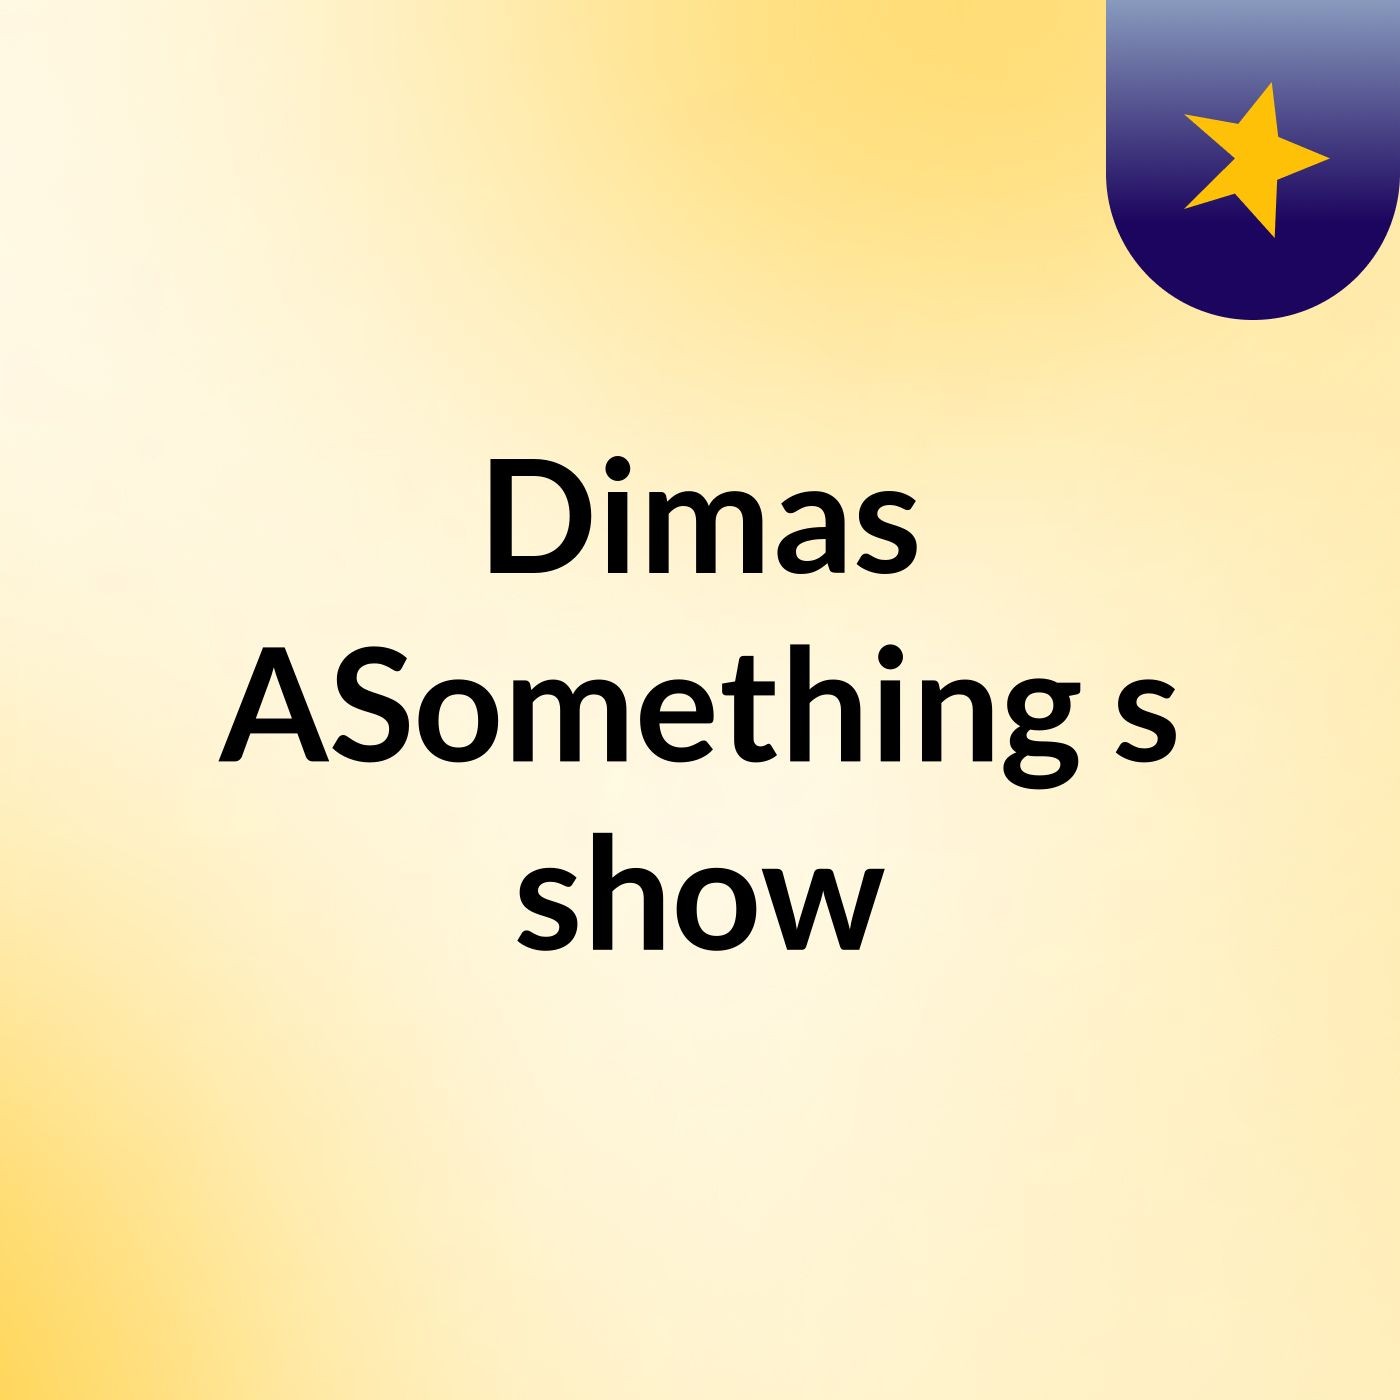 Dimas ASomething's show